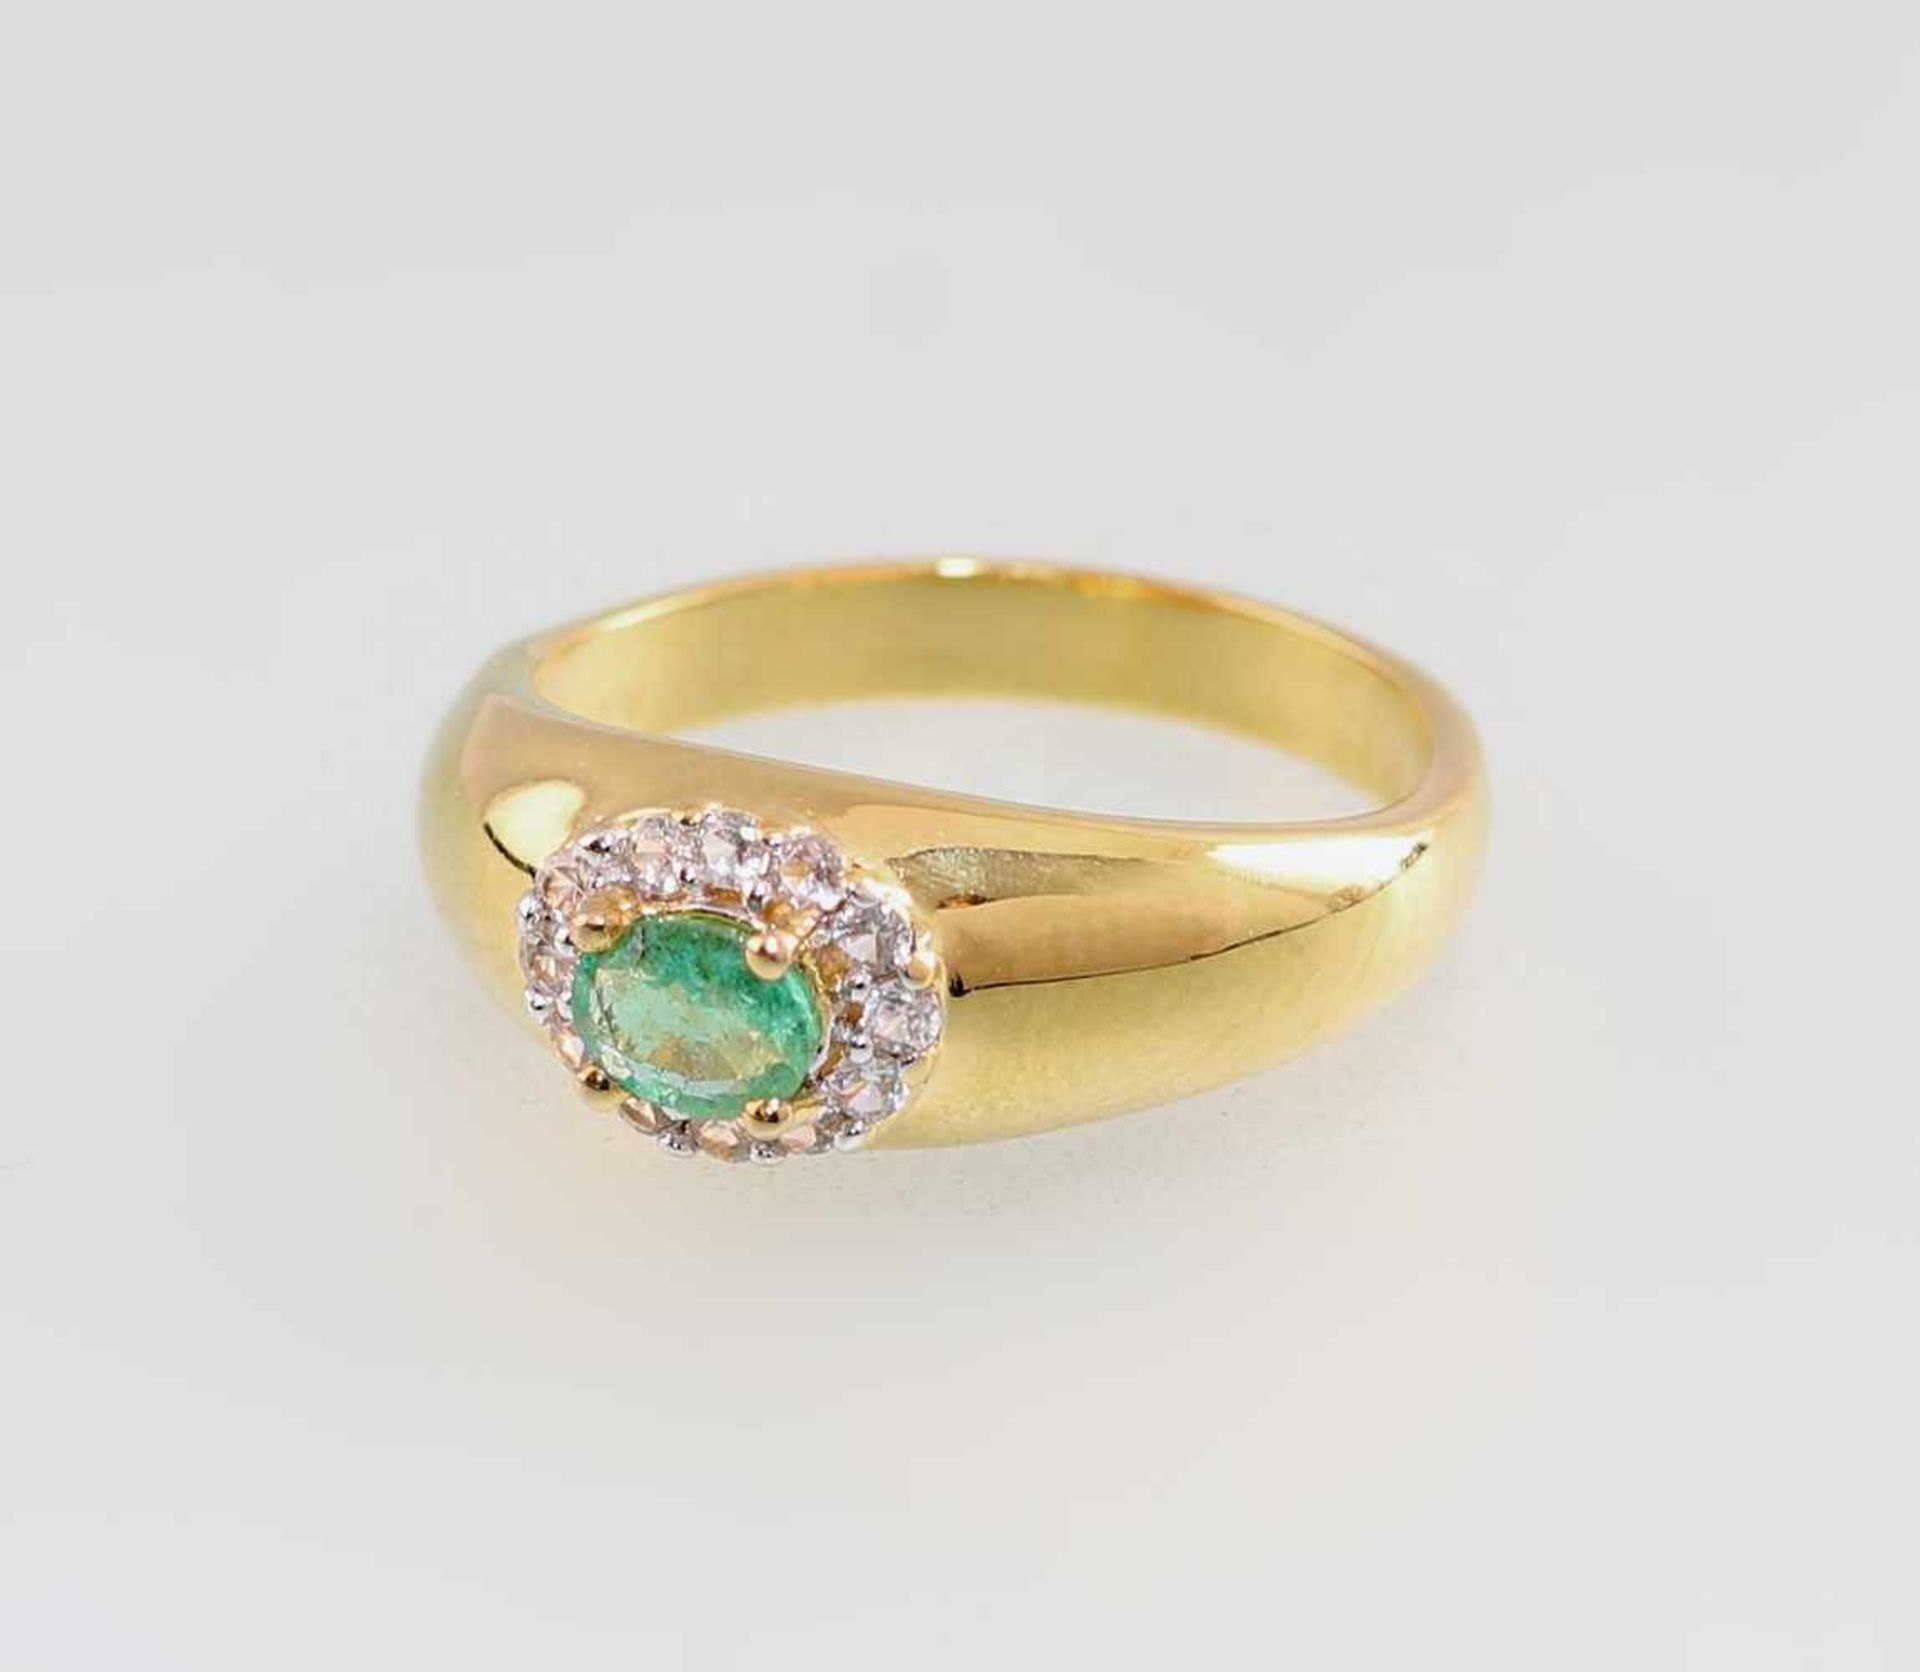 Smaragd-Topas-Ring925er Silber, vergoldet, 3,59g, an konischer Ringschine krappengefasster, oval-